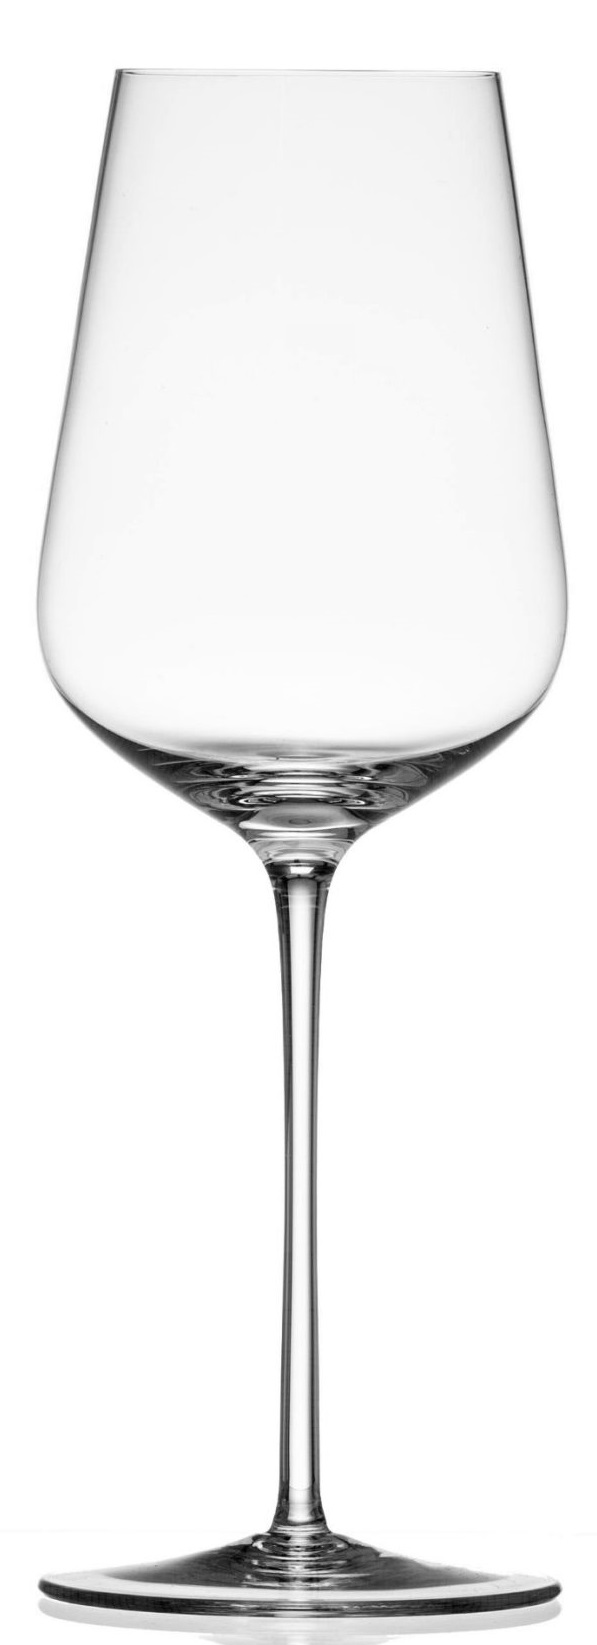 Mimas - Bílé víno 250 ml, Květná 1794